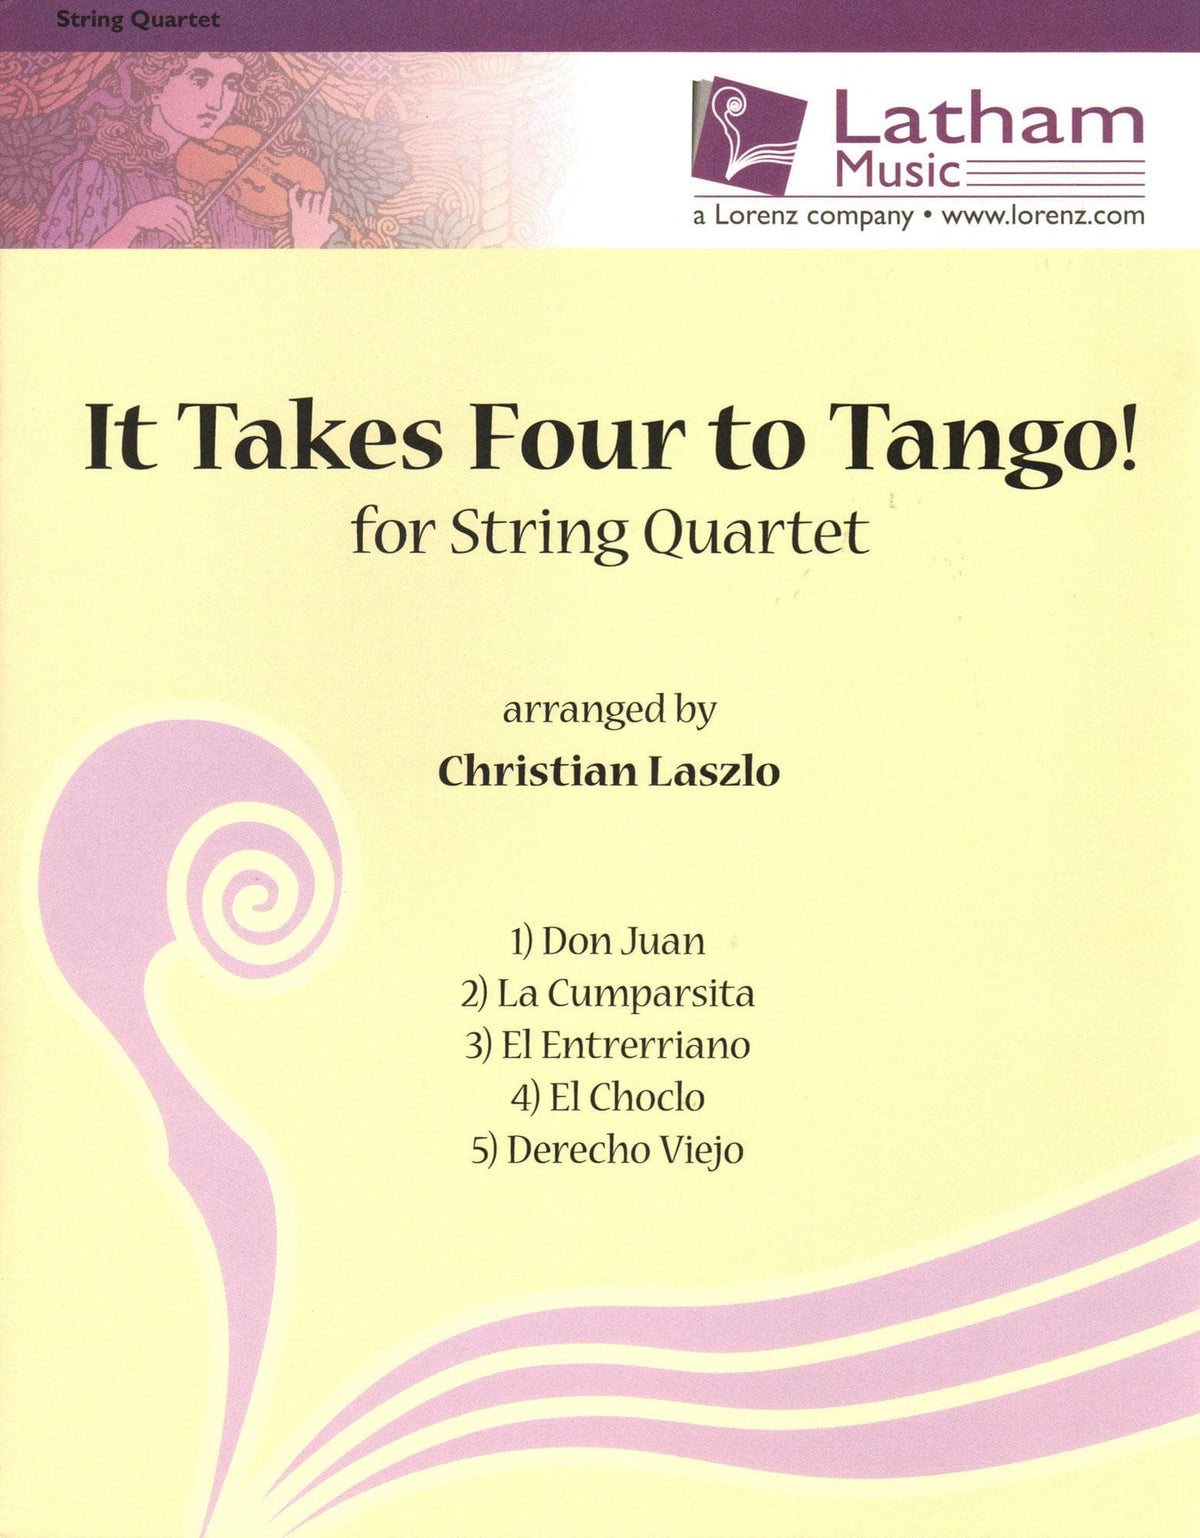 It Takes Four to Tango! - 5 Tangos for String Quartet - arranged by Christian Laszlo - Latham Music